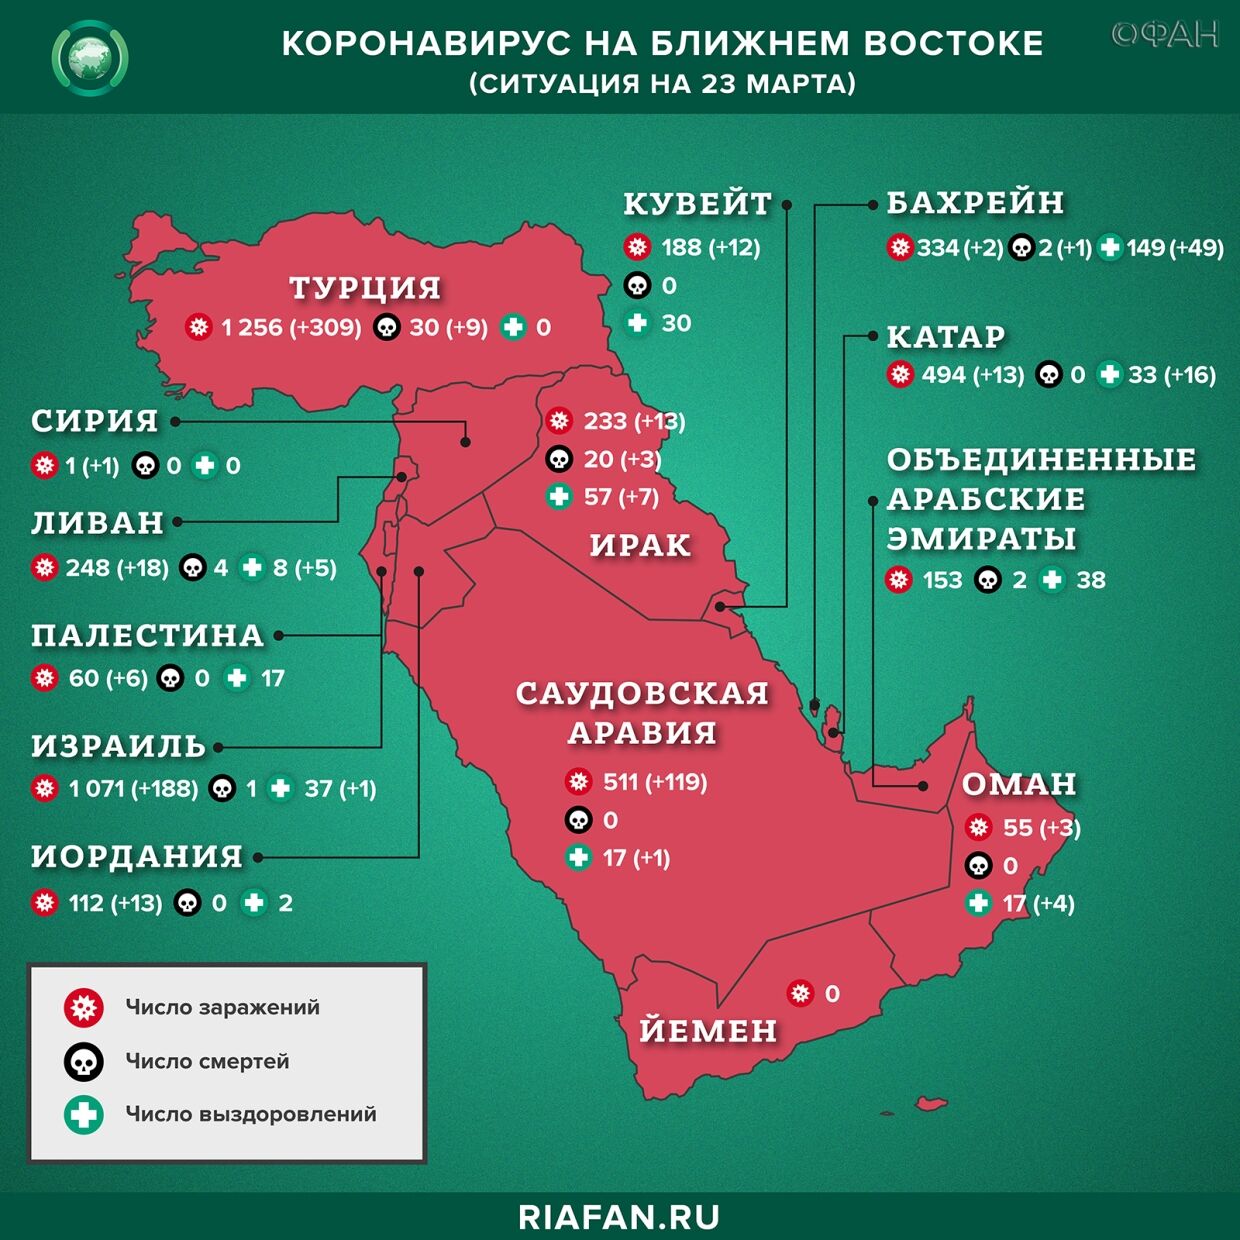 Коронавирус в арабском мире: суточная сводка по состоянию на 10.00 23 марта 2020 года